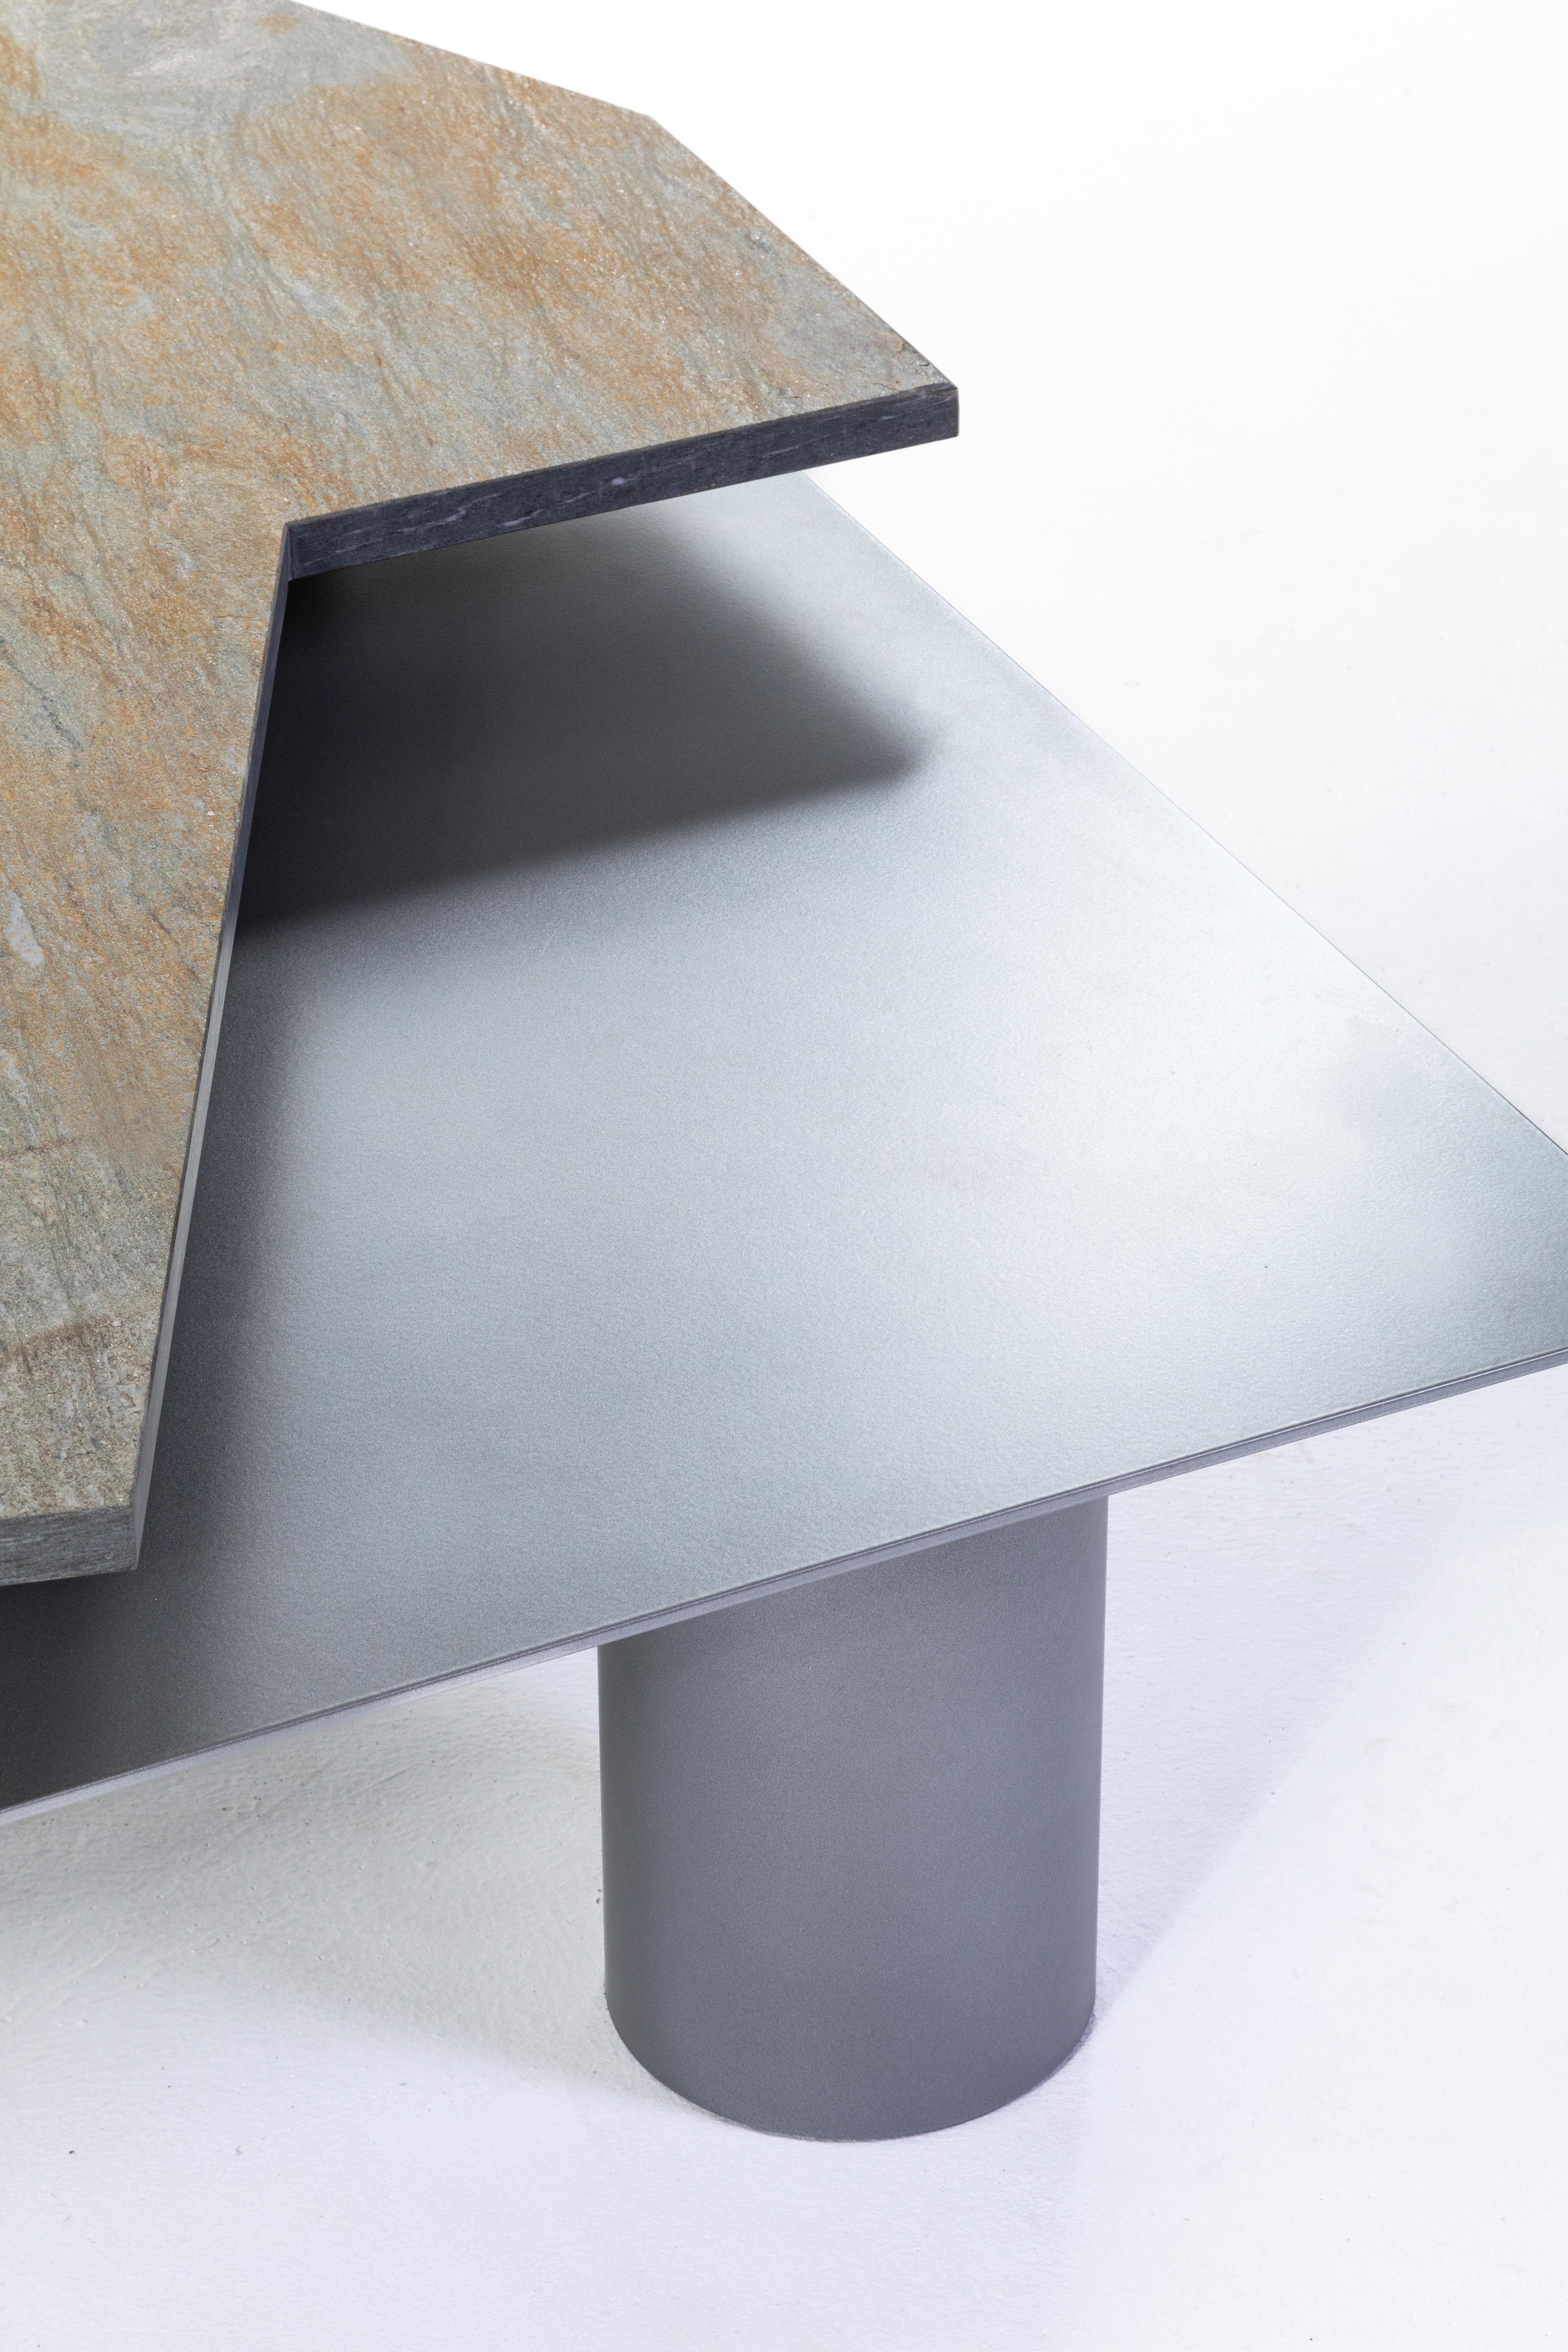 Table basse San Peyre, Stone & Aluminum de 13 Desserts
Édition limitée conçue par Clément Rougelot.

San Peyre est une table à deux niveaux en granit et aluminium. La forme du plateau en pierre est dictée par le matériau lui-même, et découpée dans